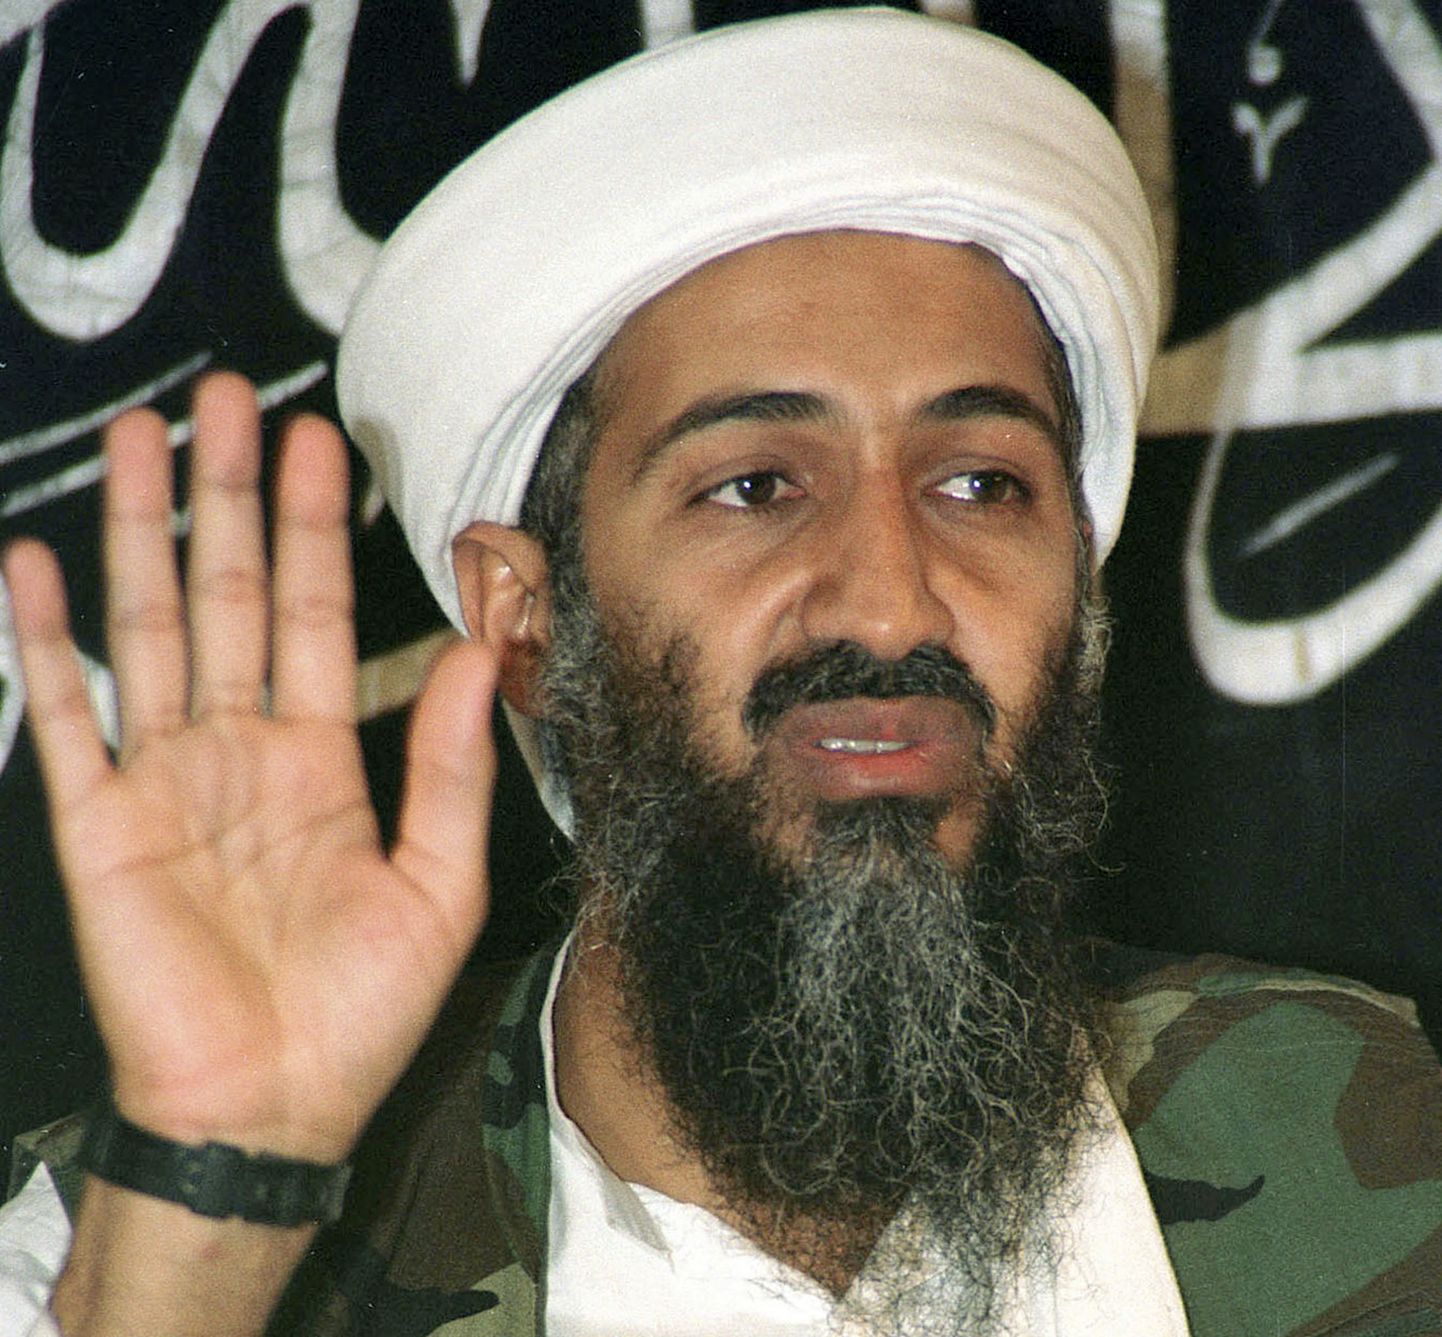 Al-Qaeda asutaja ja juht Osama bin Laden 26. mail 1998. aastal Afganistanis Kabulis pressikonverentsil. Ameeriklased tabasid ja tapsid terroristijuhi 2. mail 2011. aastal pakistanis Abbottabadis.